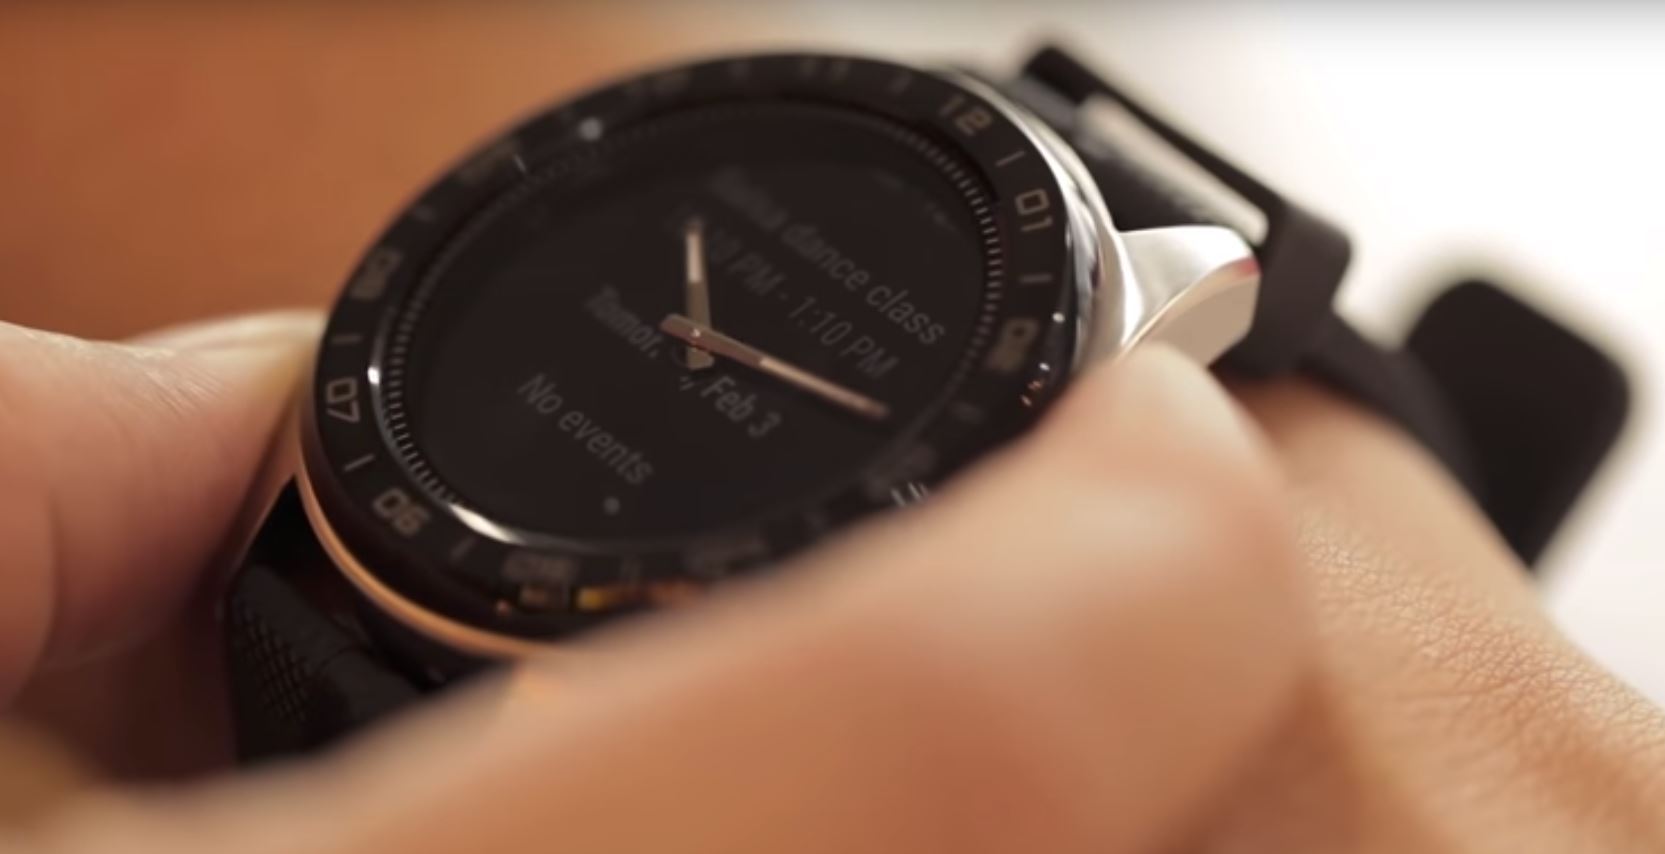 La montre LG W7 est commercialisée depuis le 14 octobre aux Etats-Unis et le sera dans le monde entier.